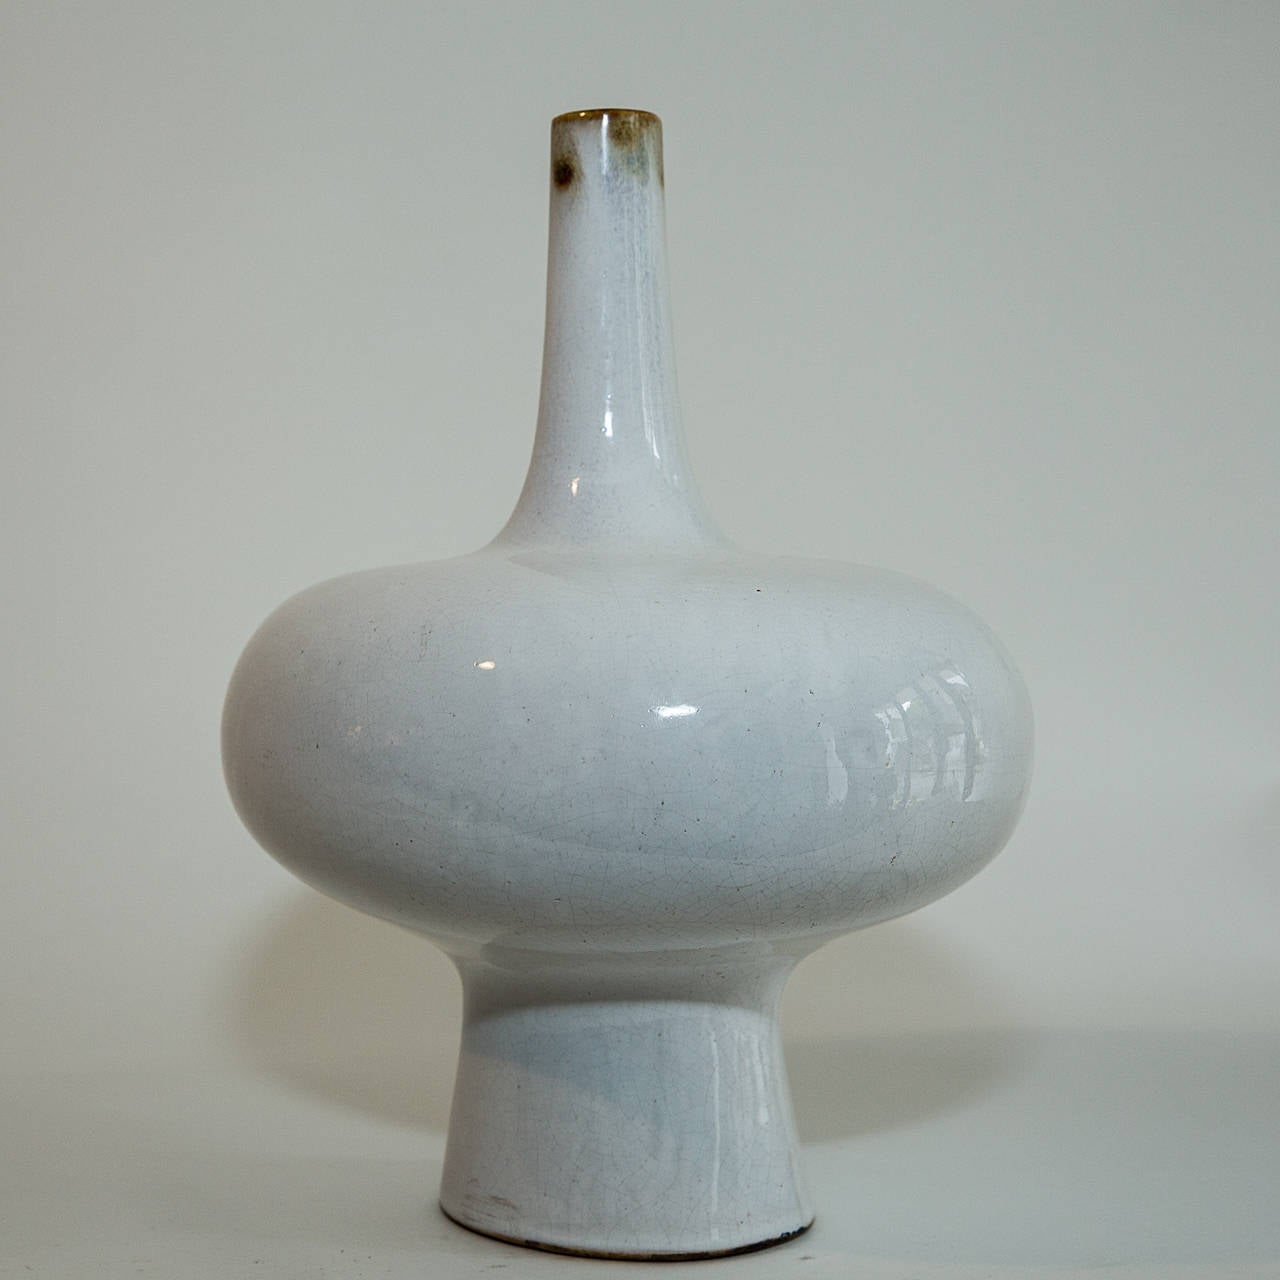 Alice Colonieu 1924-2010
French 1950s Colonieu biomorphic ceramic vase. Alice Colonieu